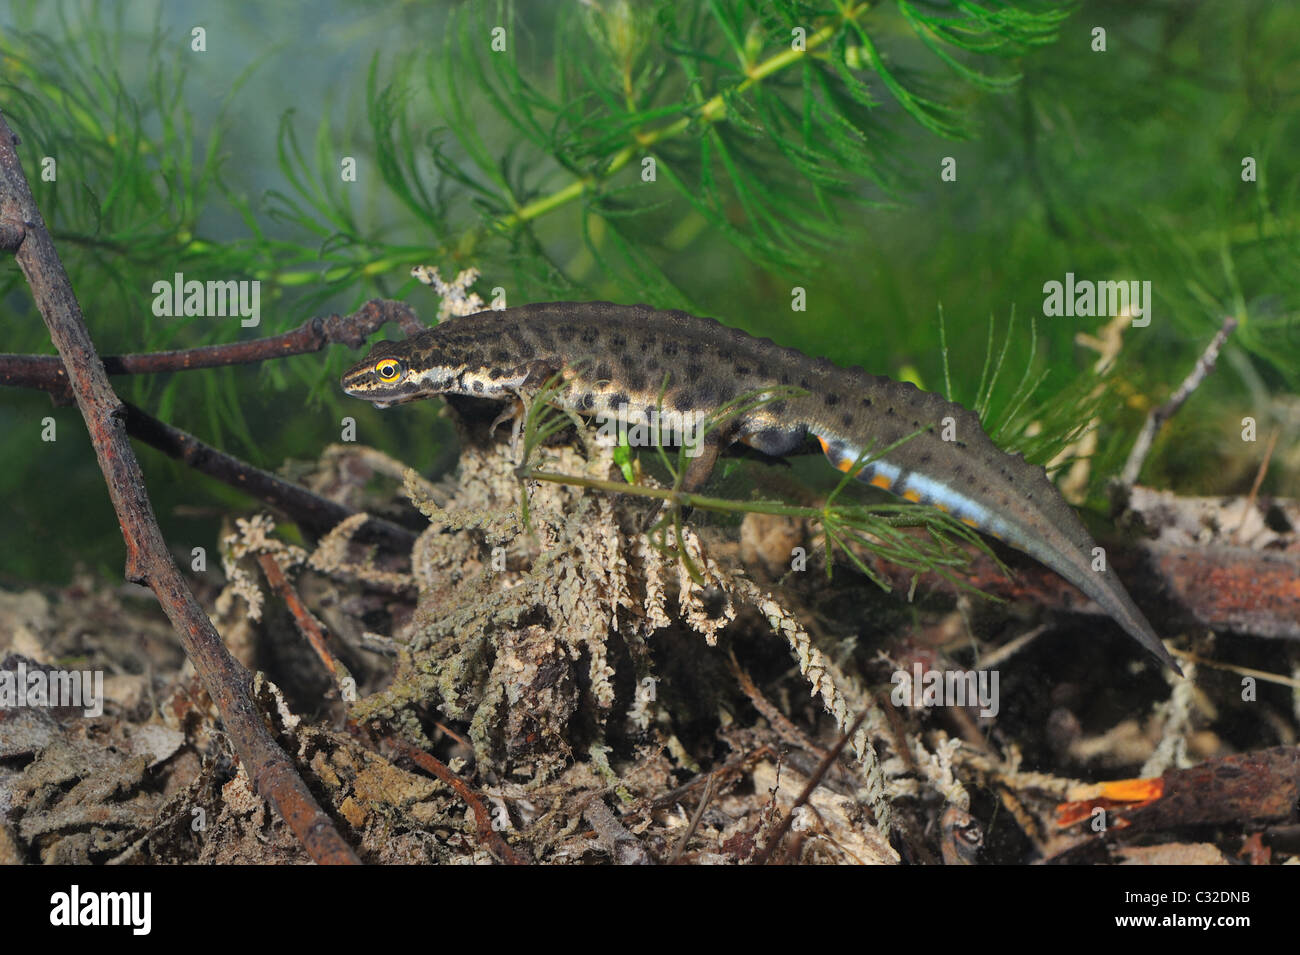 Smooth newt - Common newt (Triturus vulgaris - Lissotriton vulgaris) d'hommes à la recherche de nourriture sous l'eau - Printemps - Belgique Banque D'Images